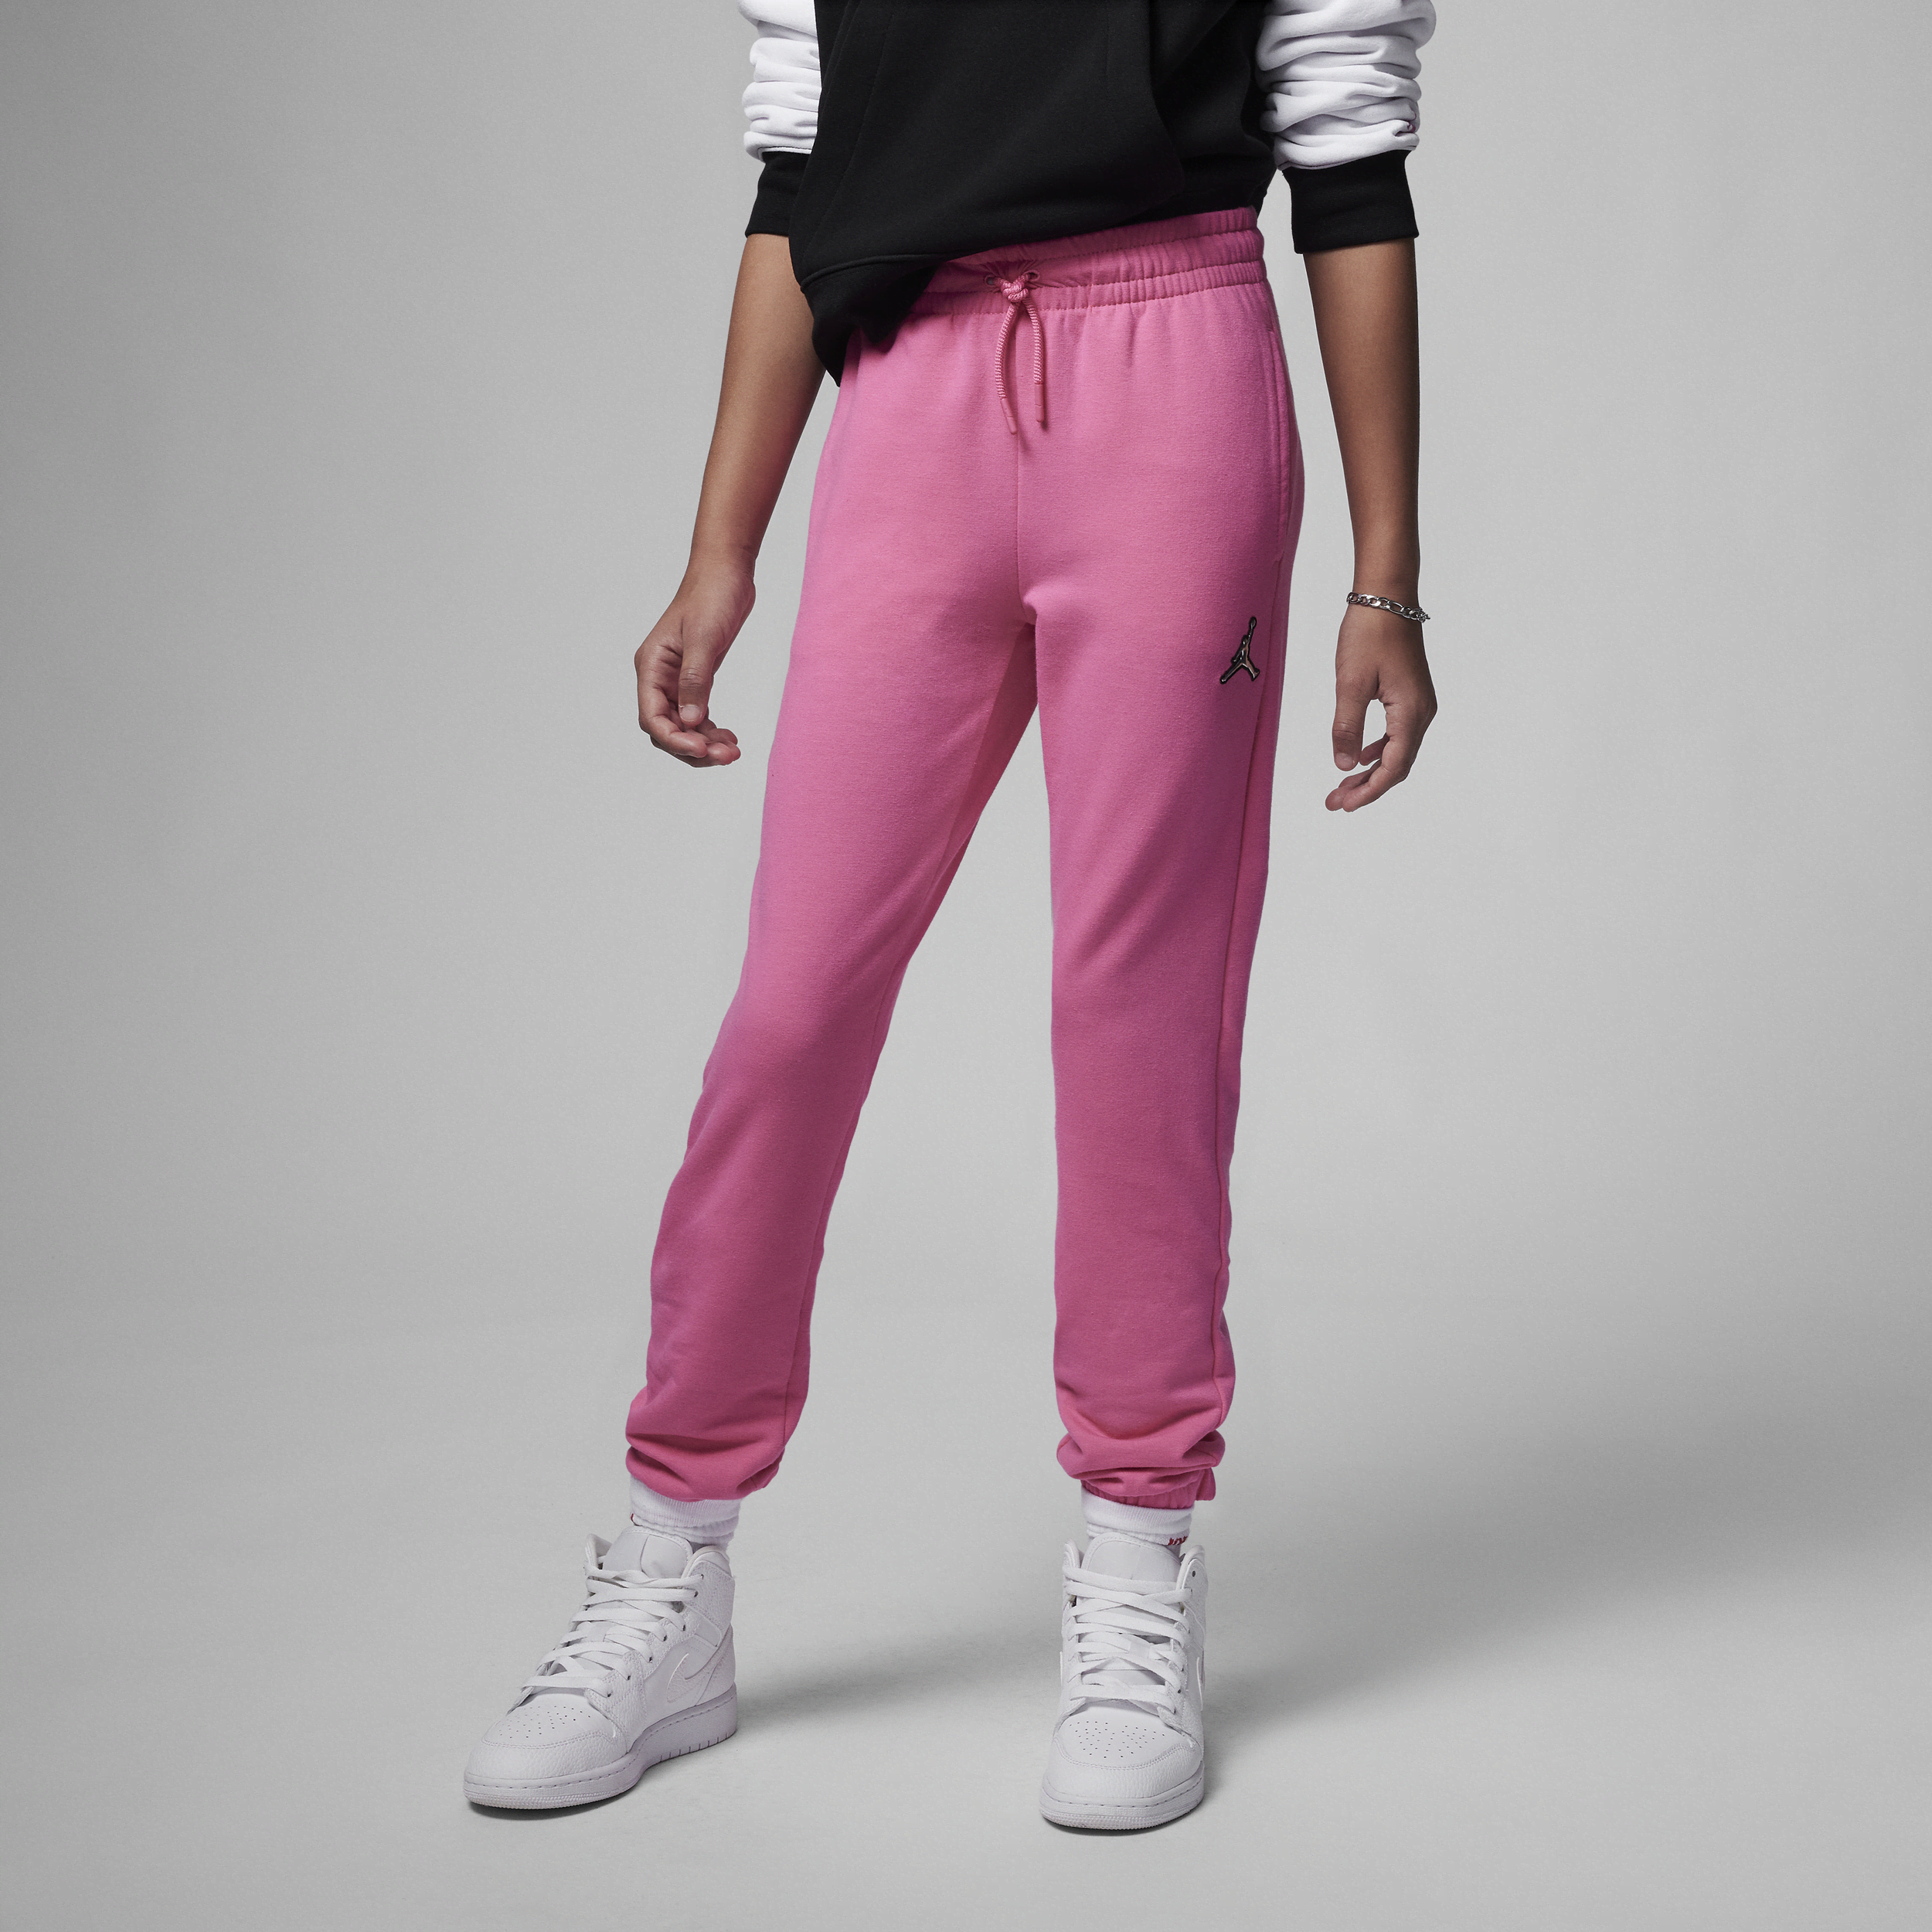 Jordan-bukser til større børn (piger) - Pink